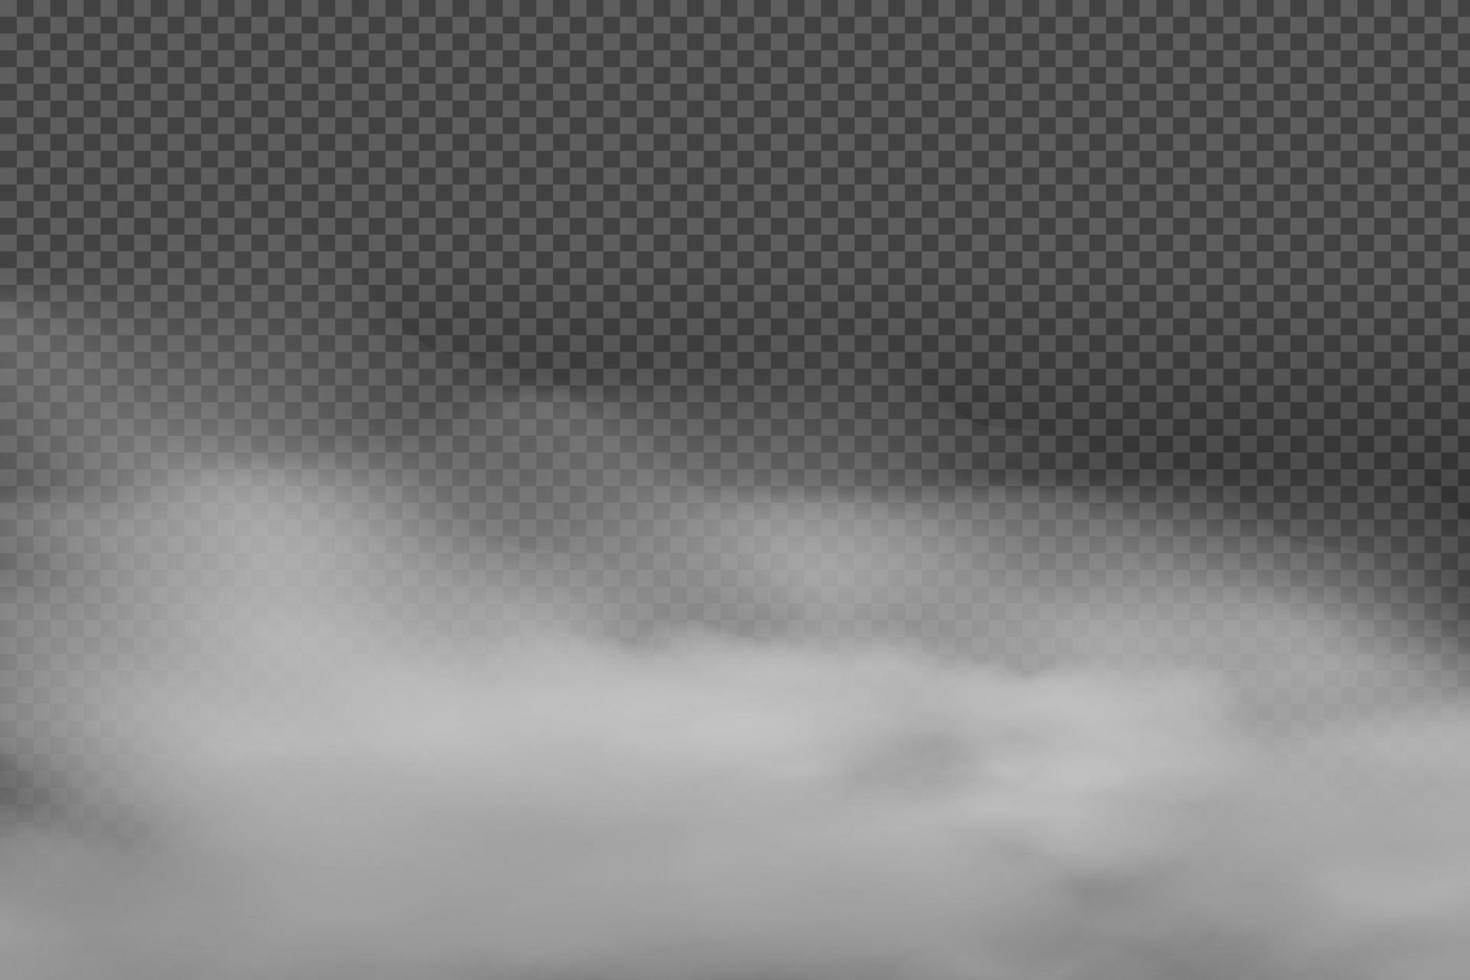 weiße vektorbewölkung, nebel oder rauch auf dunkel kariertem hintergrund. bewölkter himmel oder smog über der stadt. vektorillustration. vektor